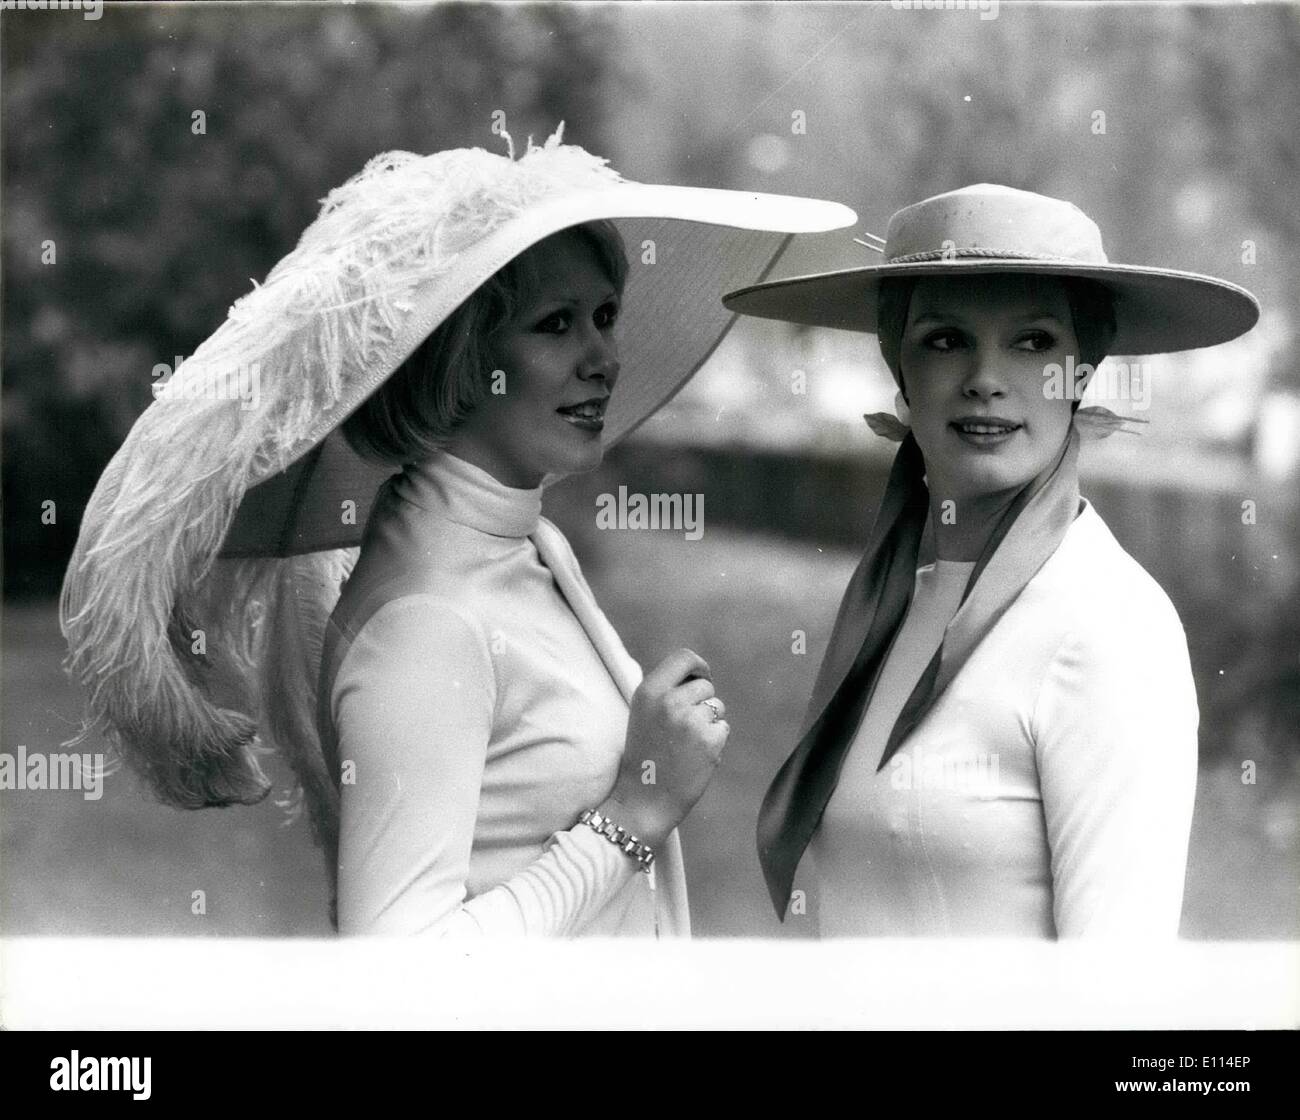 El 11 de noviembre de 1975, la proyección de la primavera los sombreros por el Gremio de sombrerería en el Hyde Park Hotel: foto muestra el modelo Mitch Marsac izquierda Foto de stock